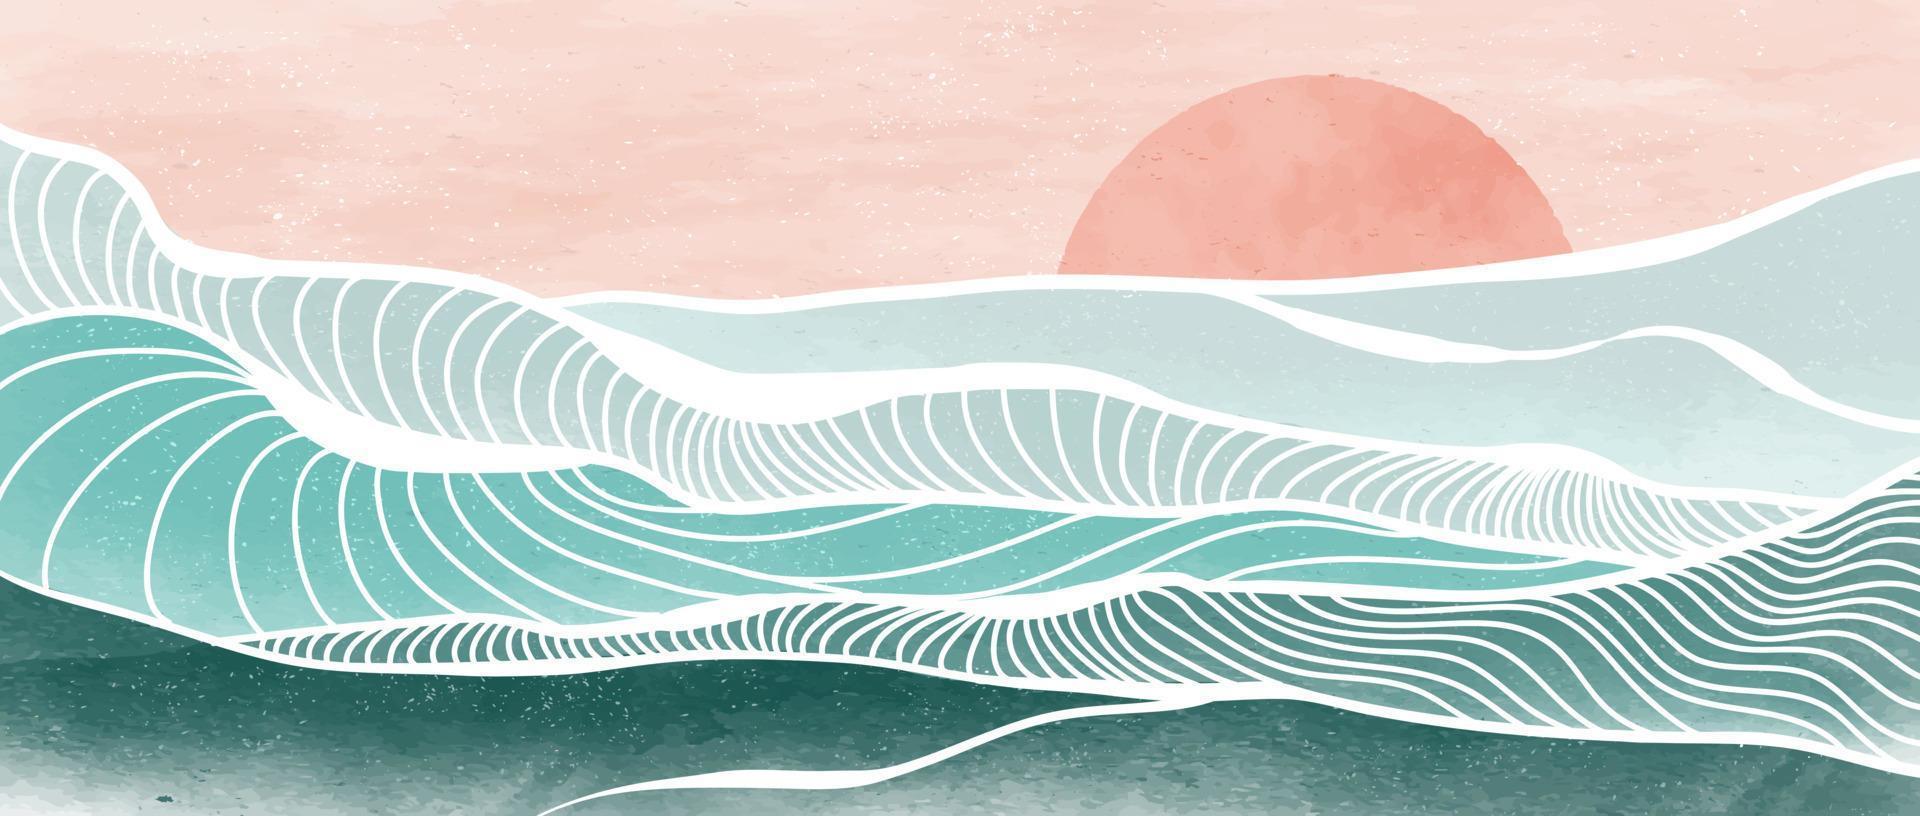 pintura moderna minimalista creativa e impresión de arte lineal. paisajes abstractos de fondos estéticos contemporáneos de olas oceánicas y montañas. con mar, horizonte, ola. ilustraciones vectoriales vector